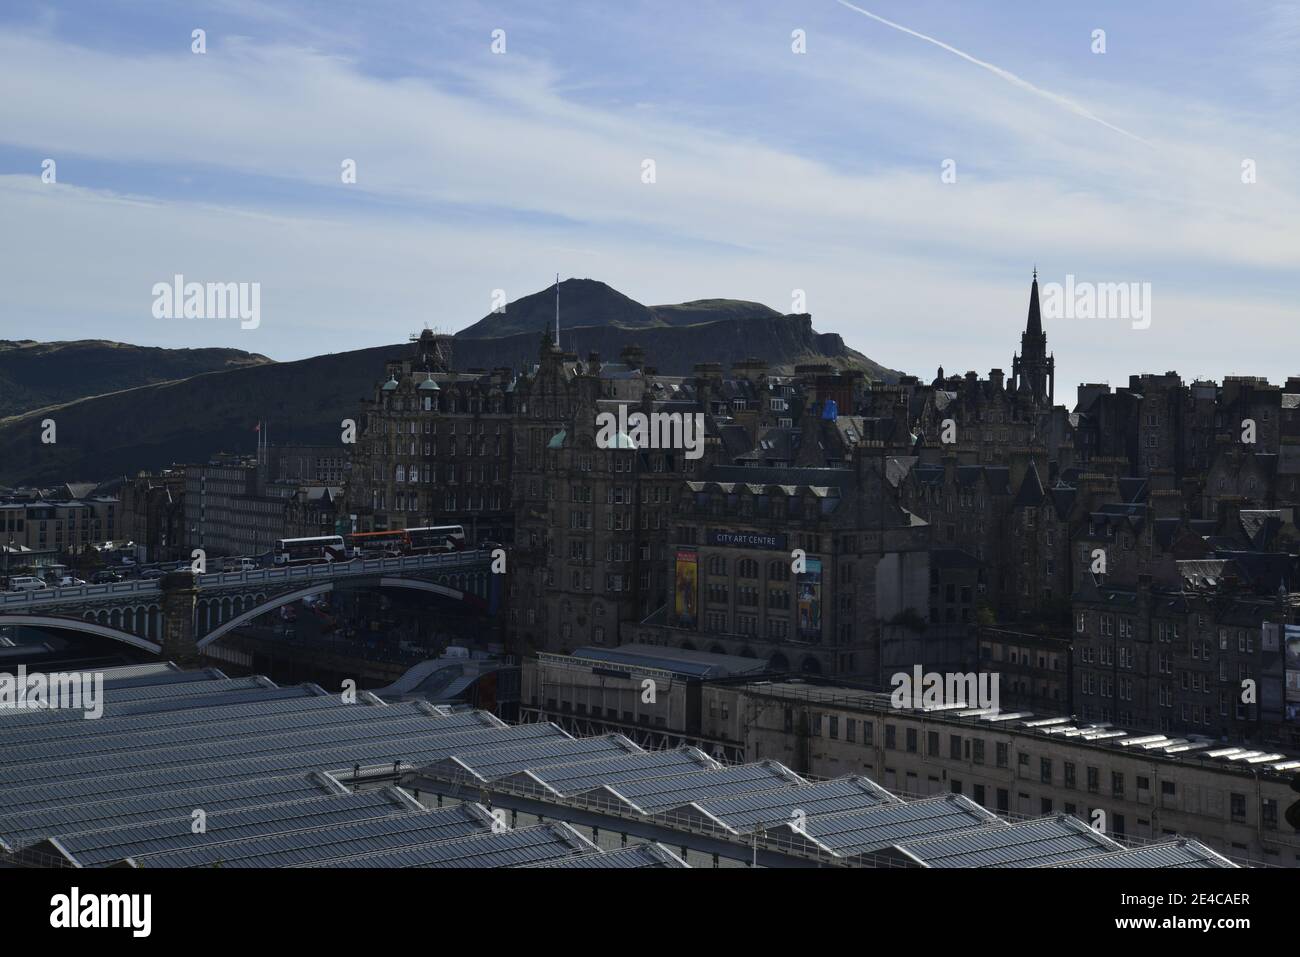 Blick vom neuen Dach des Waverley Bahnhofs auf die Altstadt von Edinburgh mit Calton Hill, Schottland, Britische Inseln, Großbritannien Stockfoto